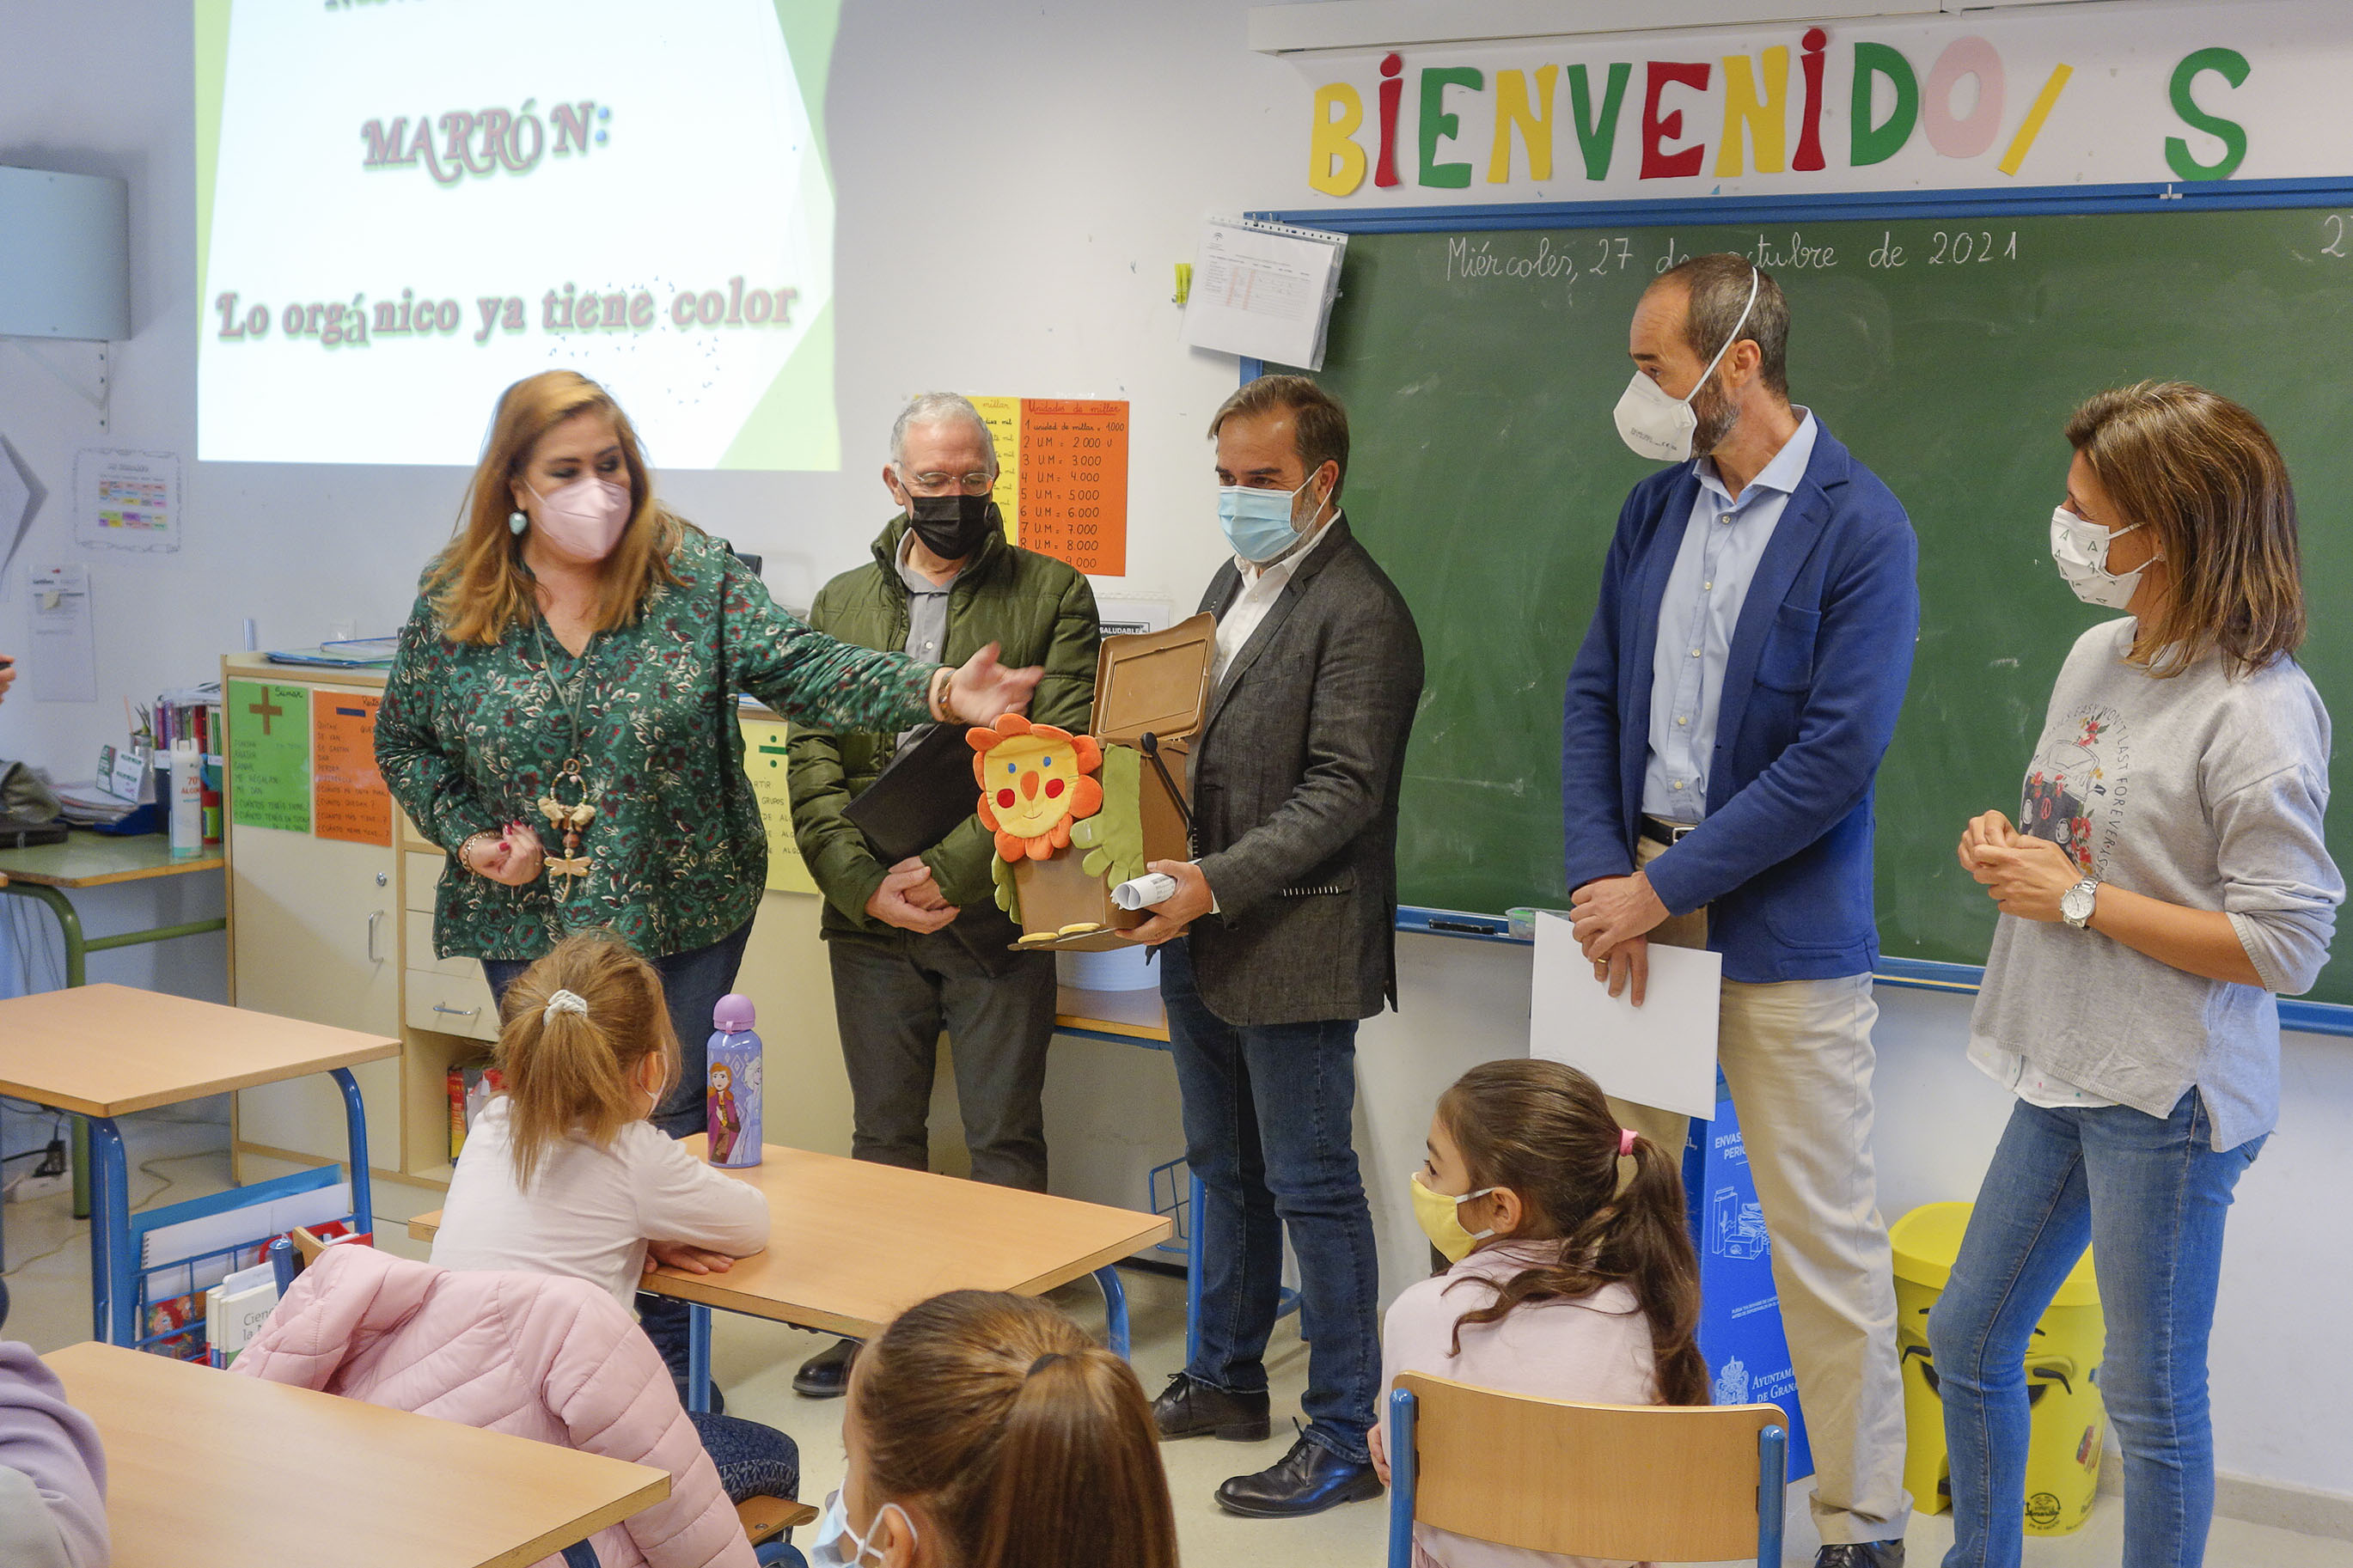 3.000 escolares participan en la campaña «Lo orgánico ya tiene color», sobre el uso del contenedor marrón